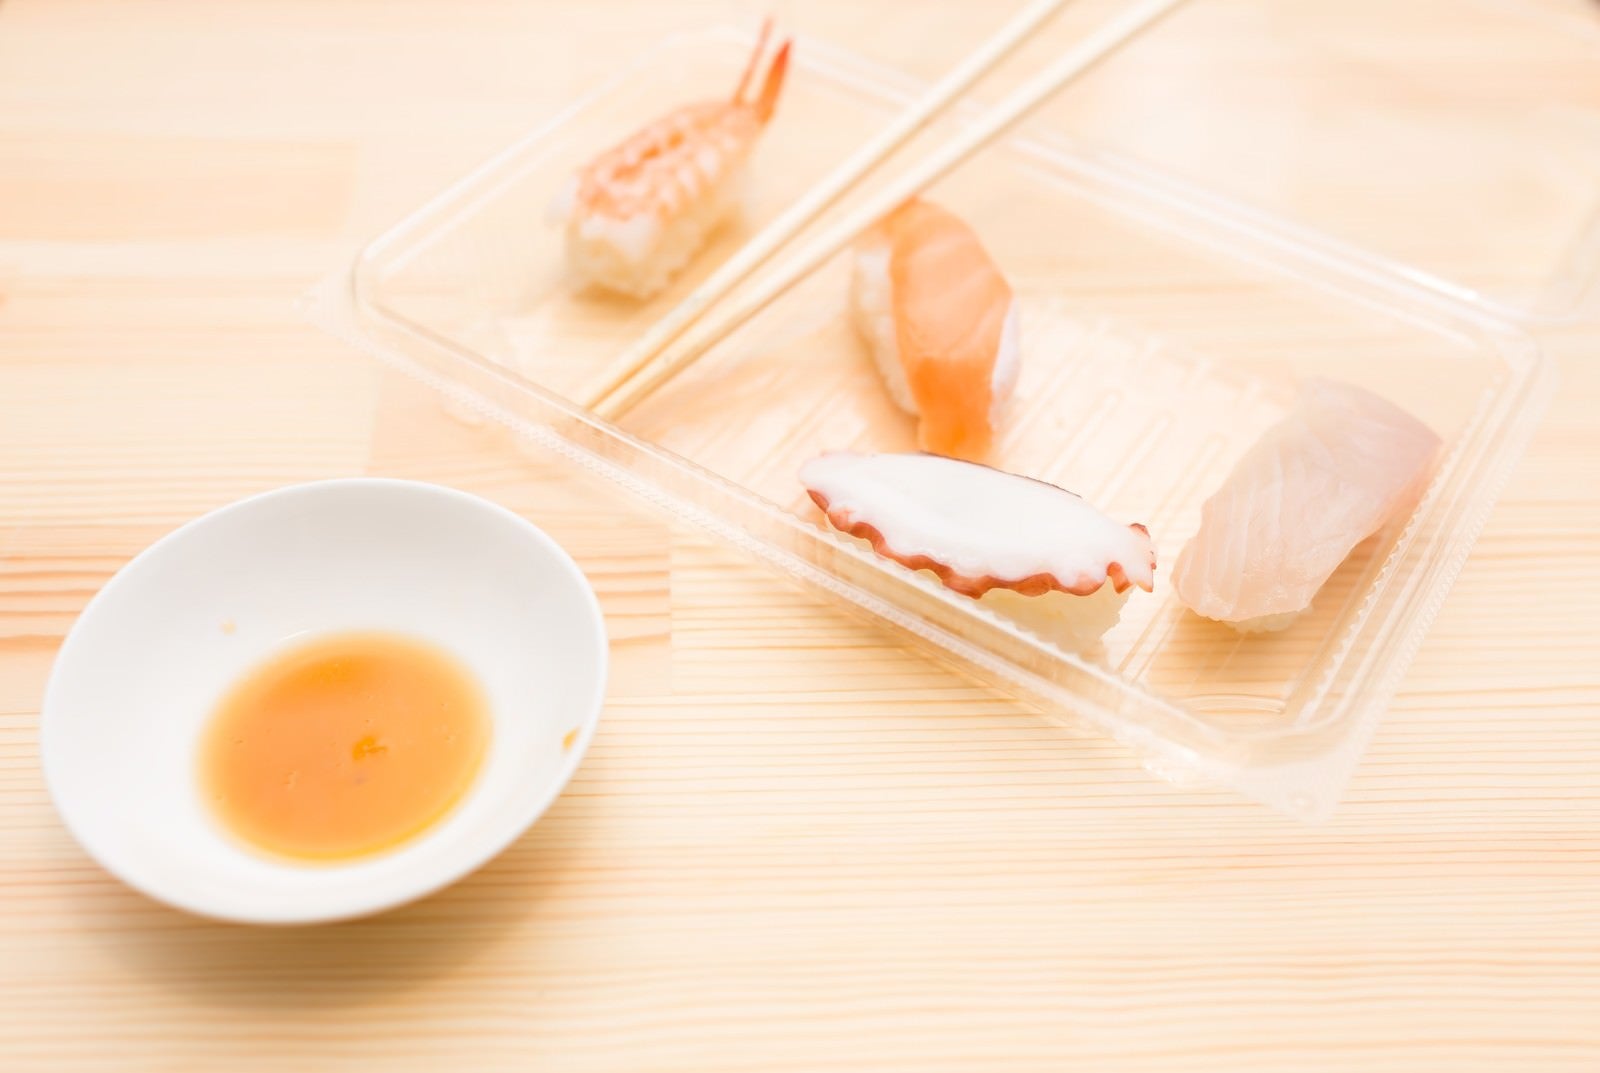 「食べ残された寿司」の写真